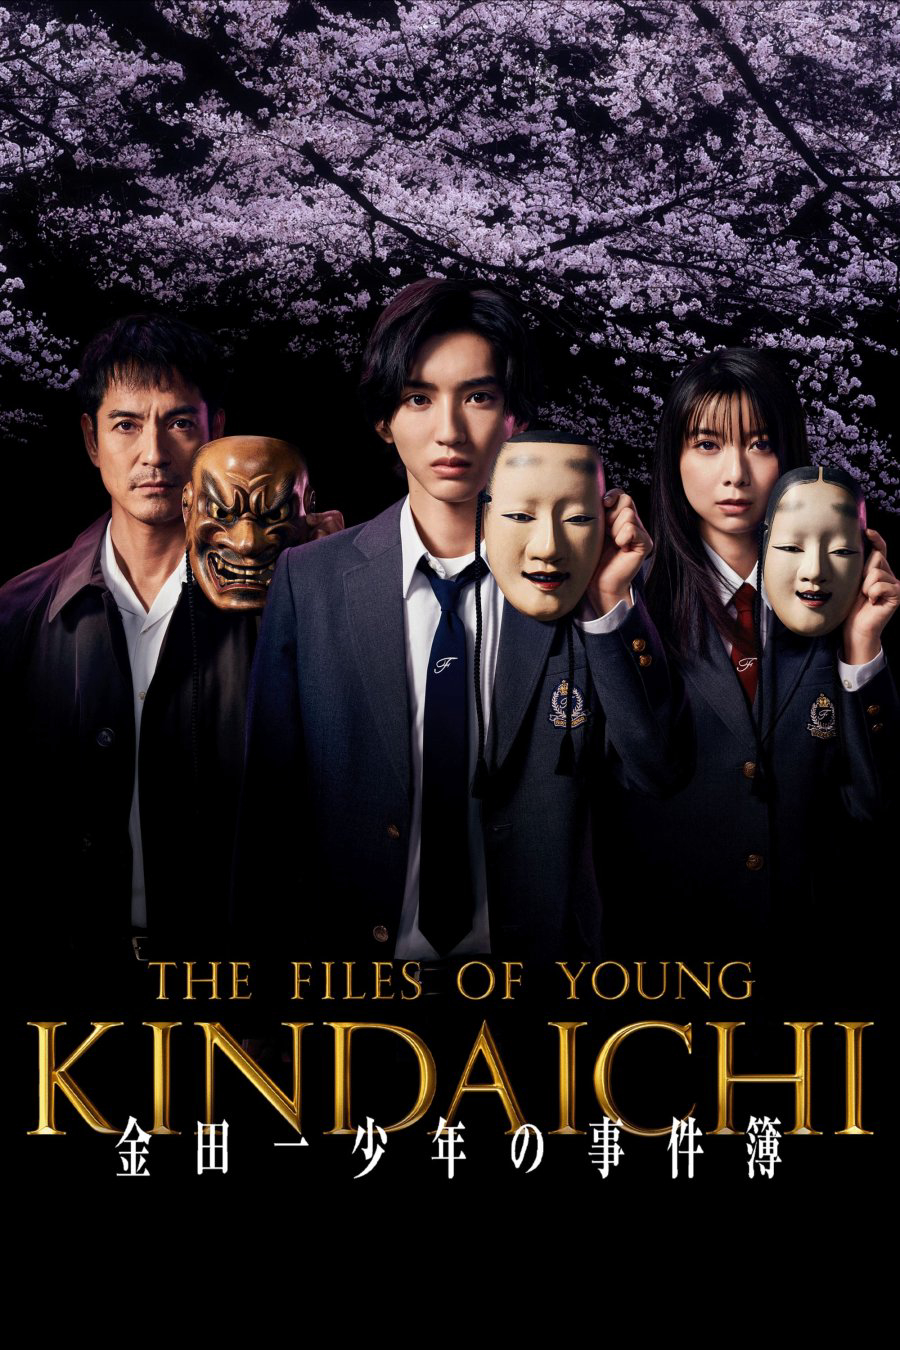 Xem Phim The Files of Young Kindaichi 5 (Kindaichi Shonen no Jikenbo 5)